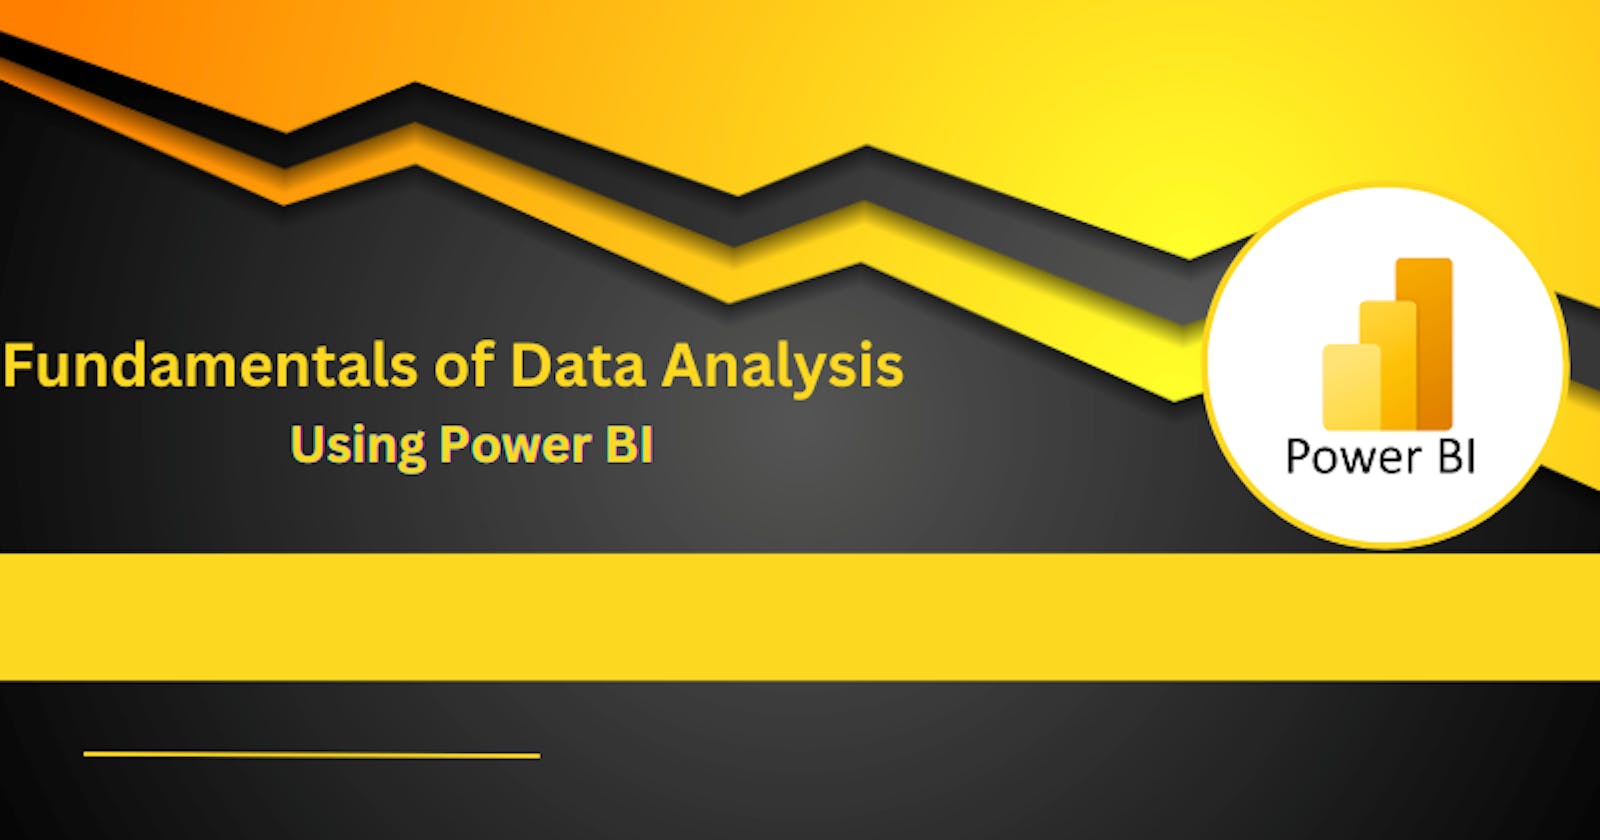 Fundamentals of Data Analysis using Power BI